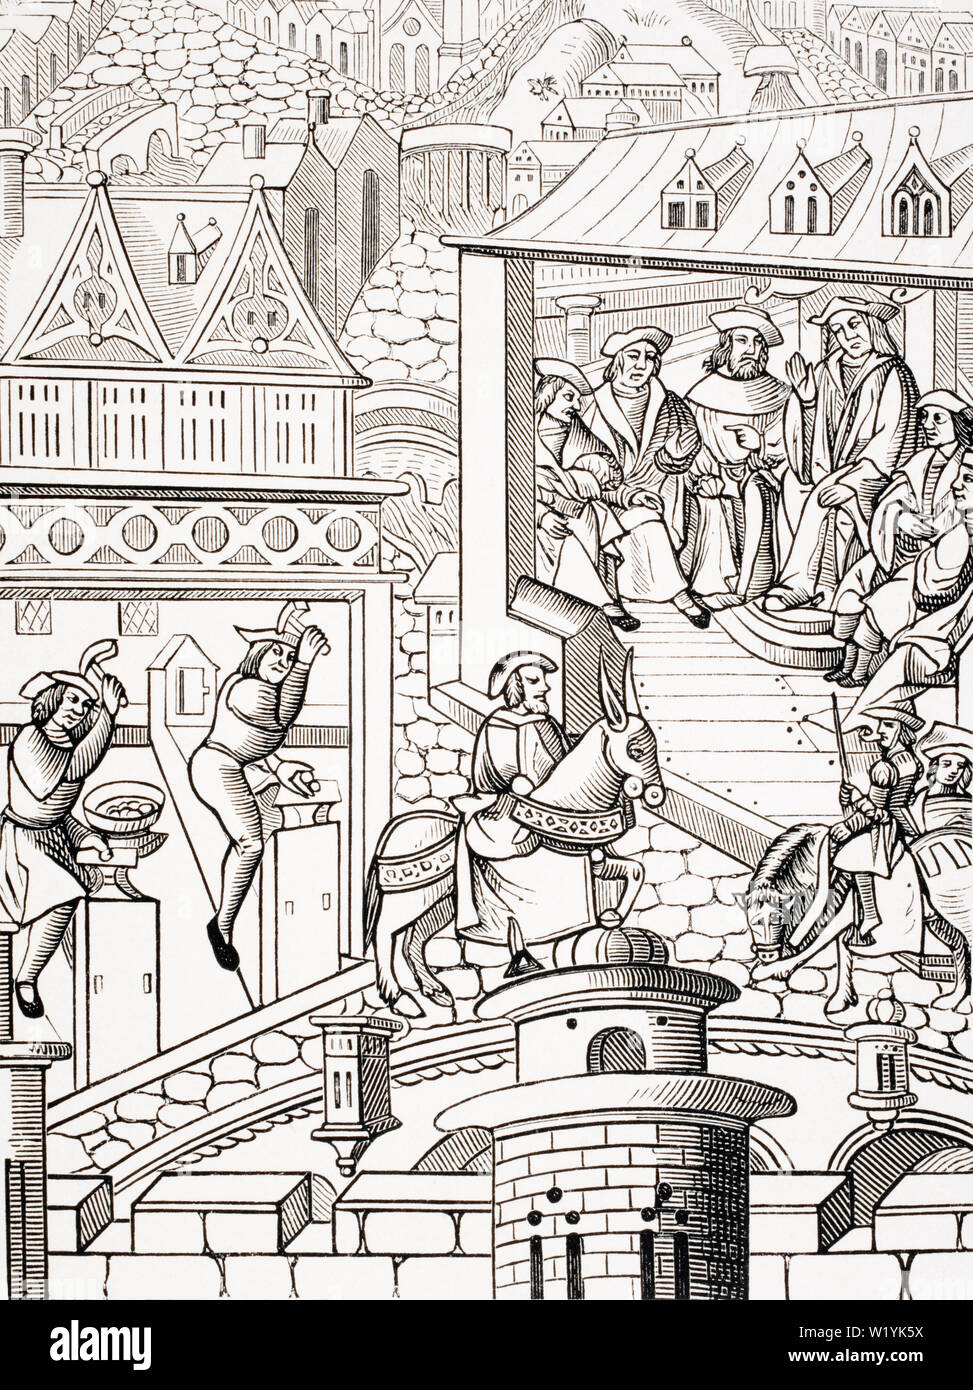 La Monnaie royale canadienne. Copie d'une gravure sur bois dans de l'Institution et administration de la Politique a choisi 1520 publié Banque D'Images